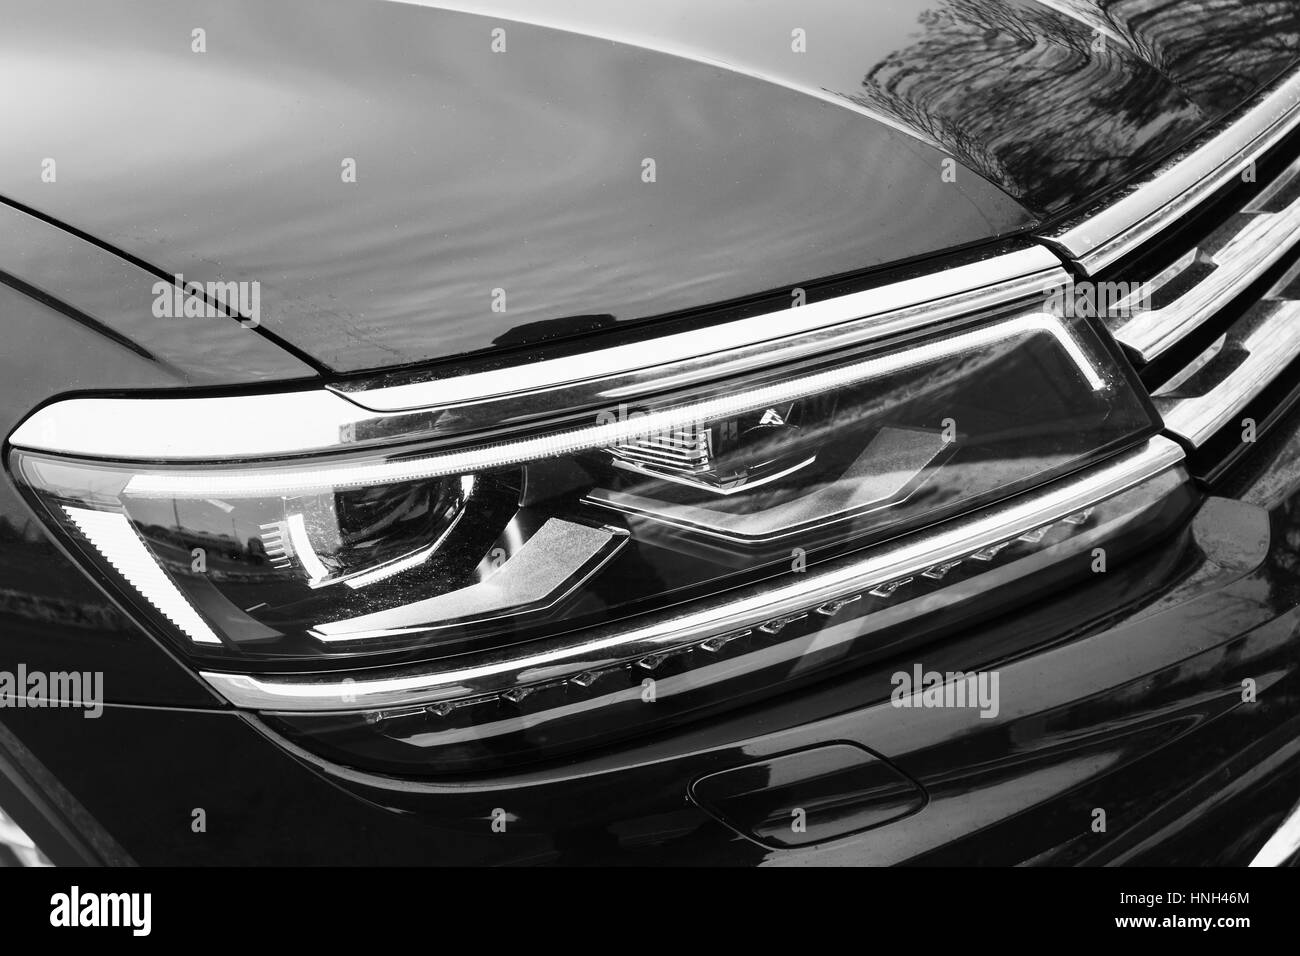 Led scheinwerfer auto Schwarzweiß-Stockfotos und -bilder - Alamy